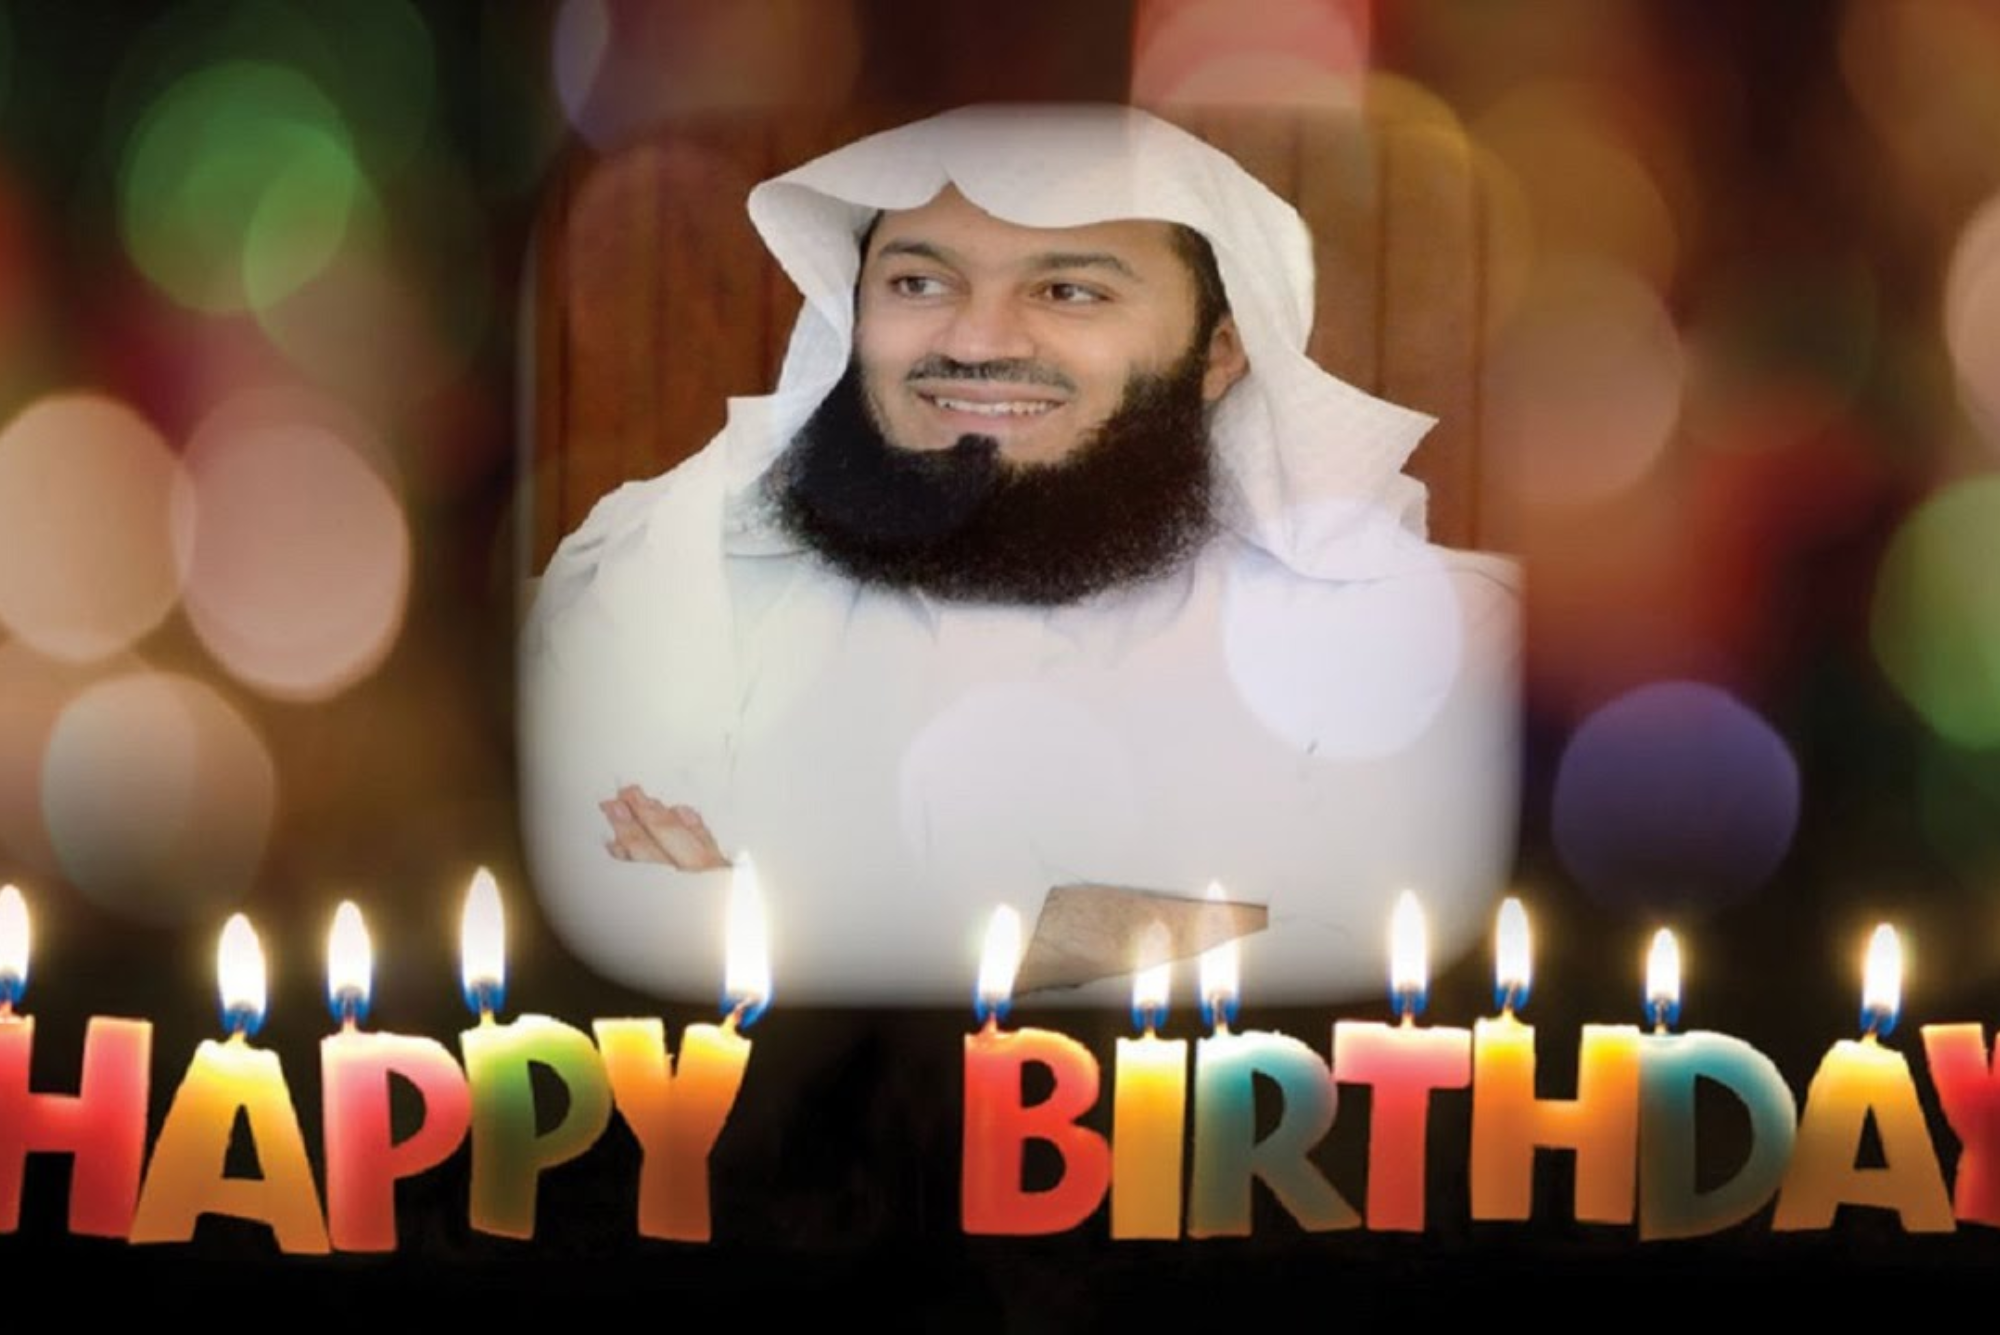 Celebrating Birthdays Haram